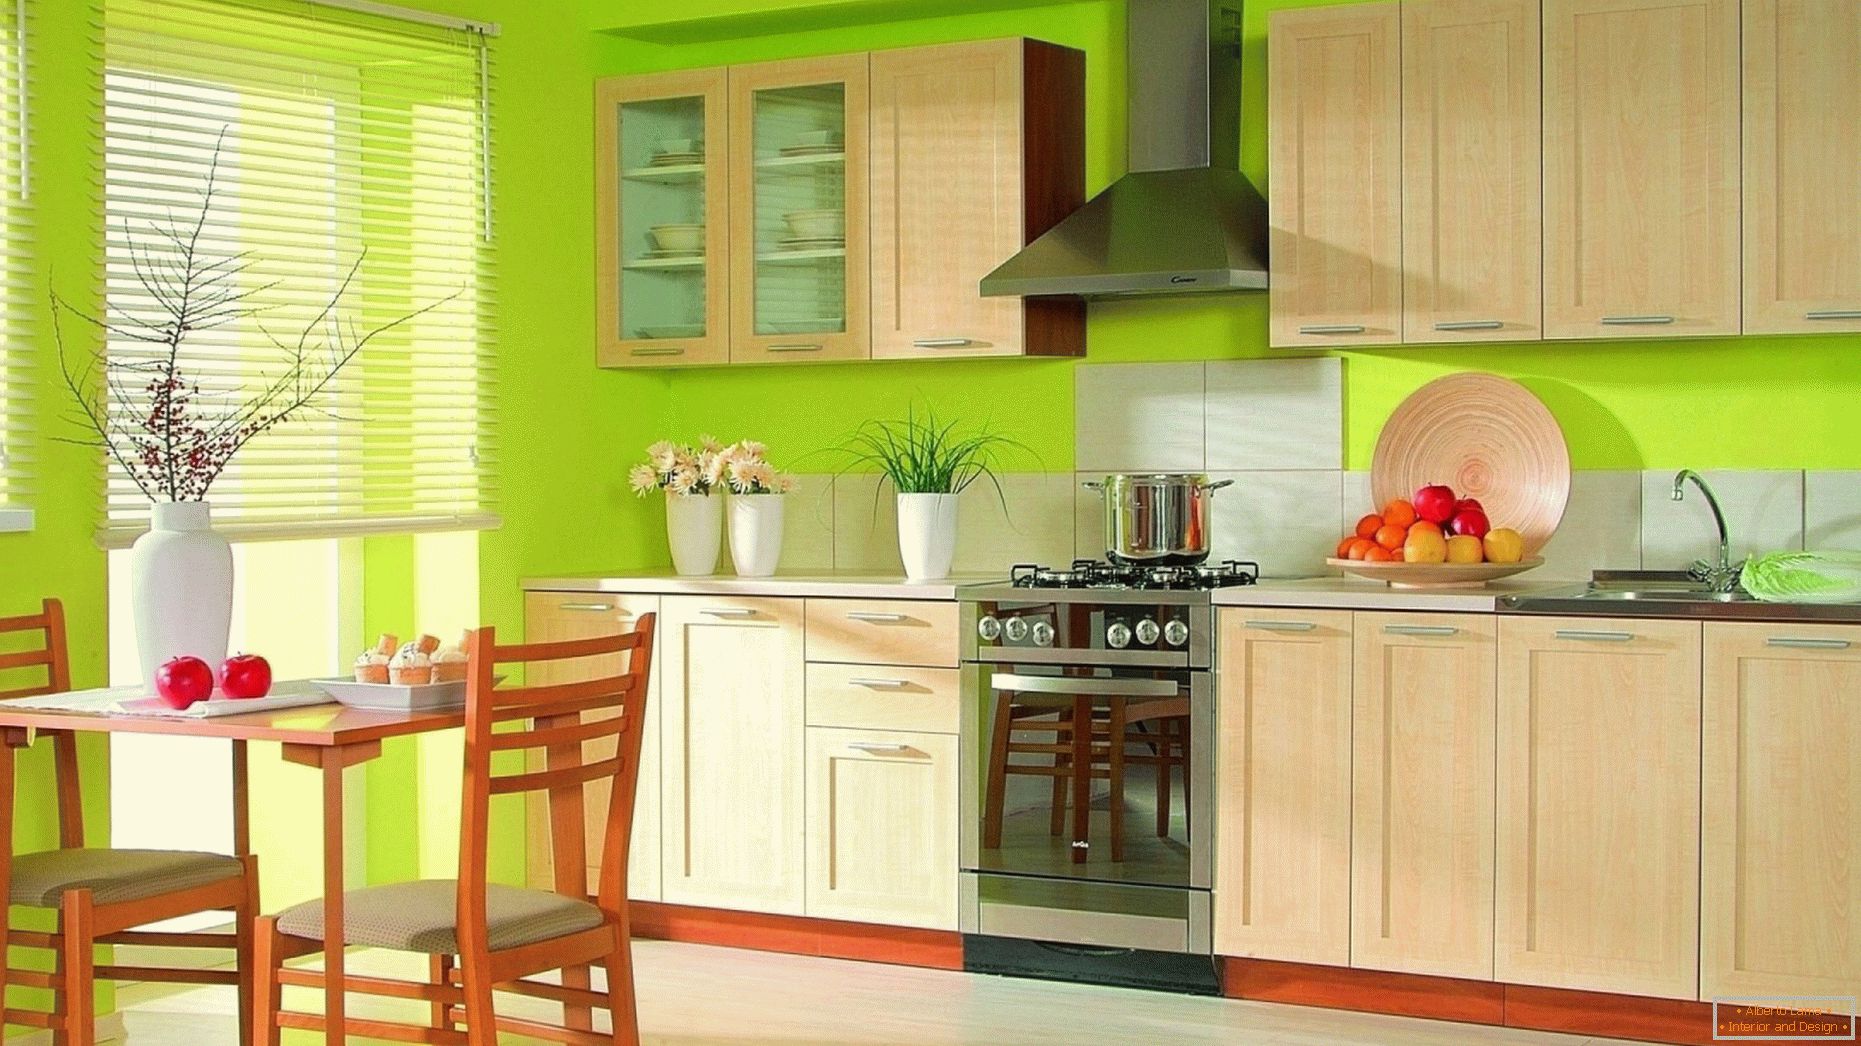 Design de cozinha com cores contrastantes